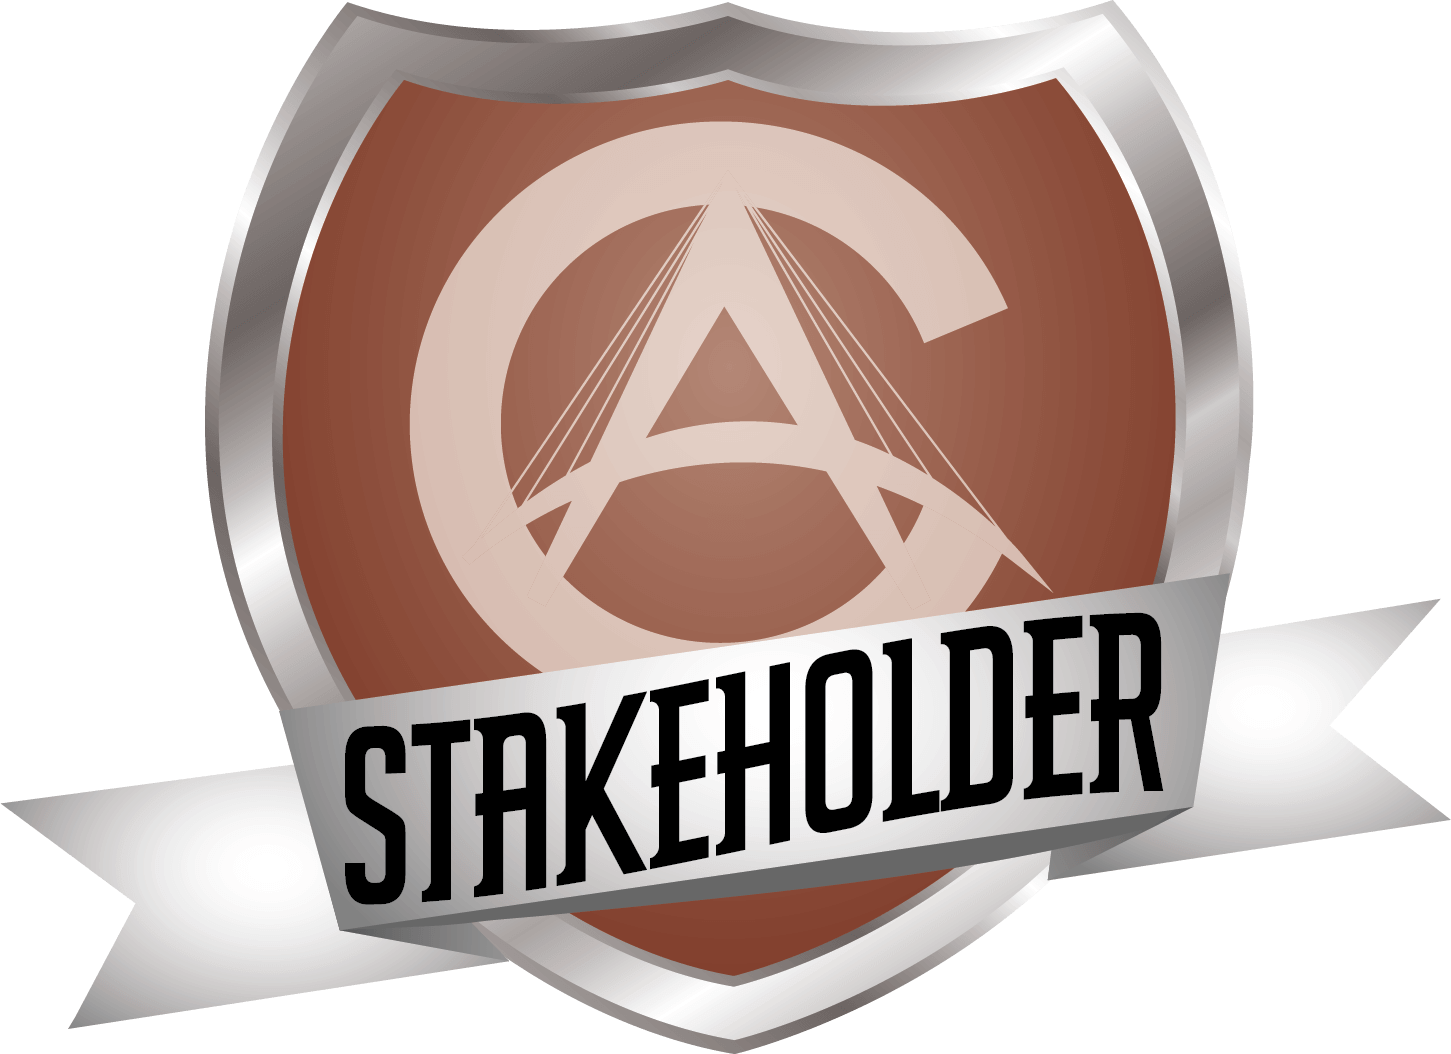 Stakeholder